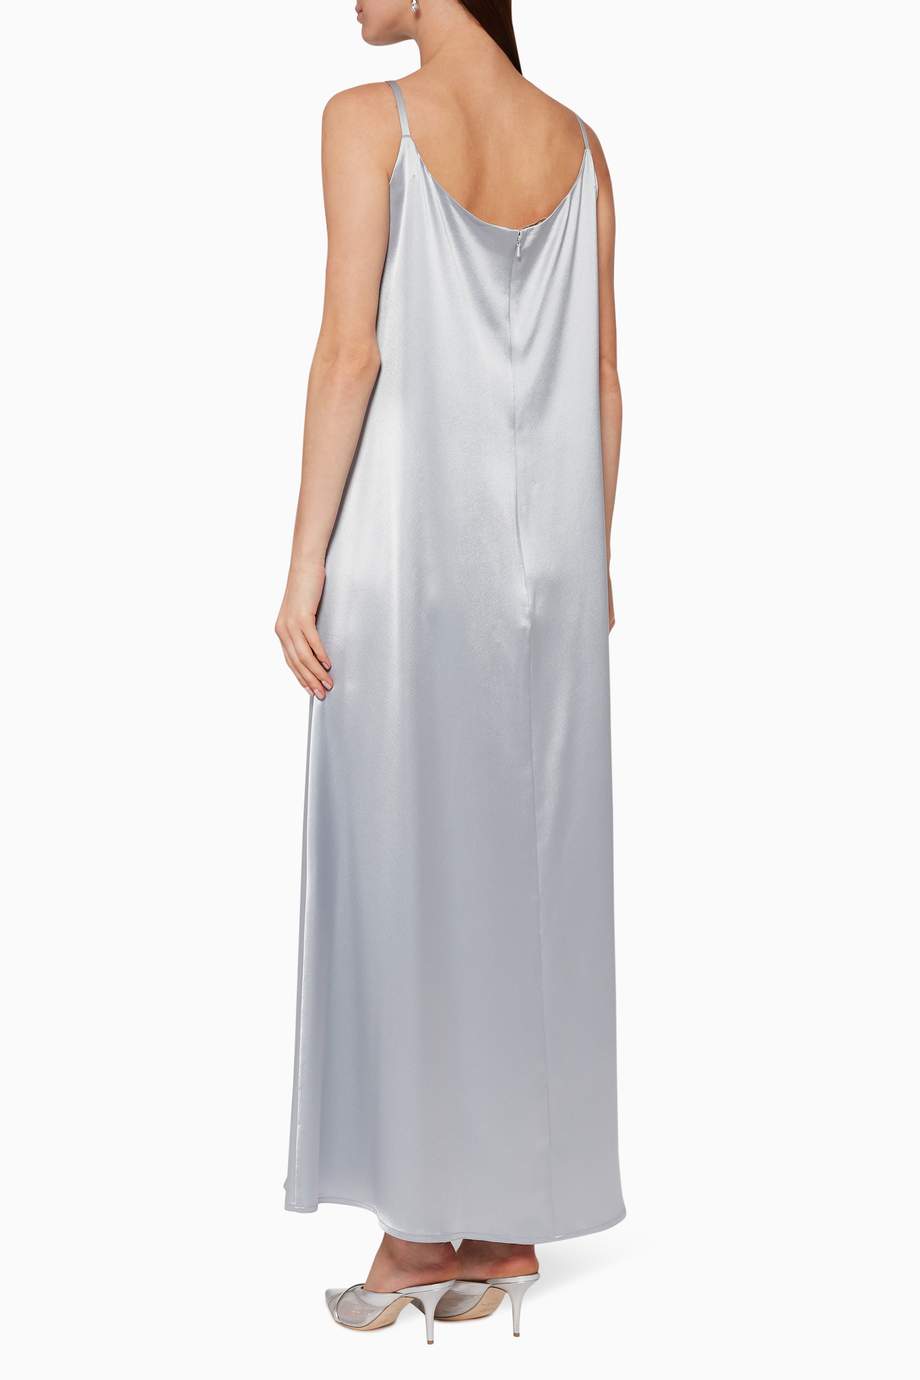 Shop Pearl Haute Couture Grey Satin Inner Slip Dress for Women | Ounass UAE